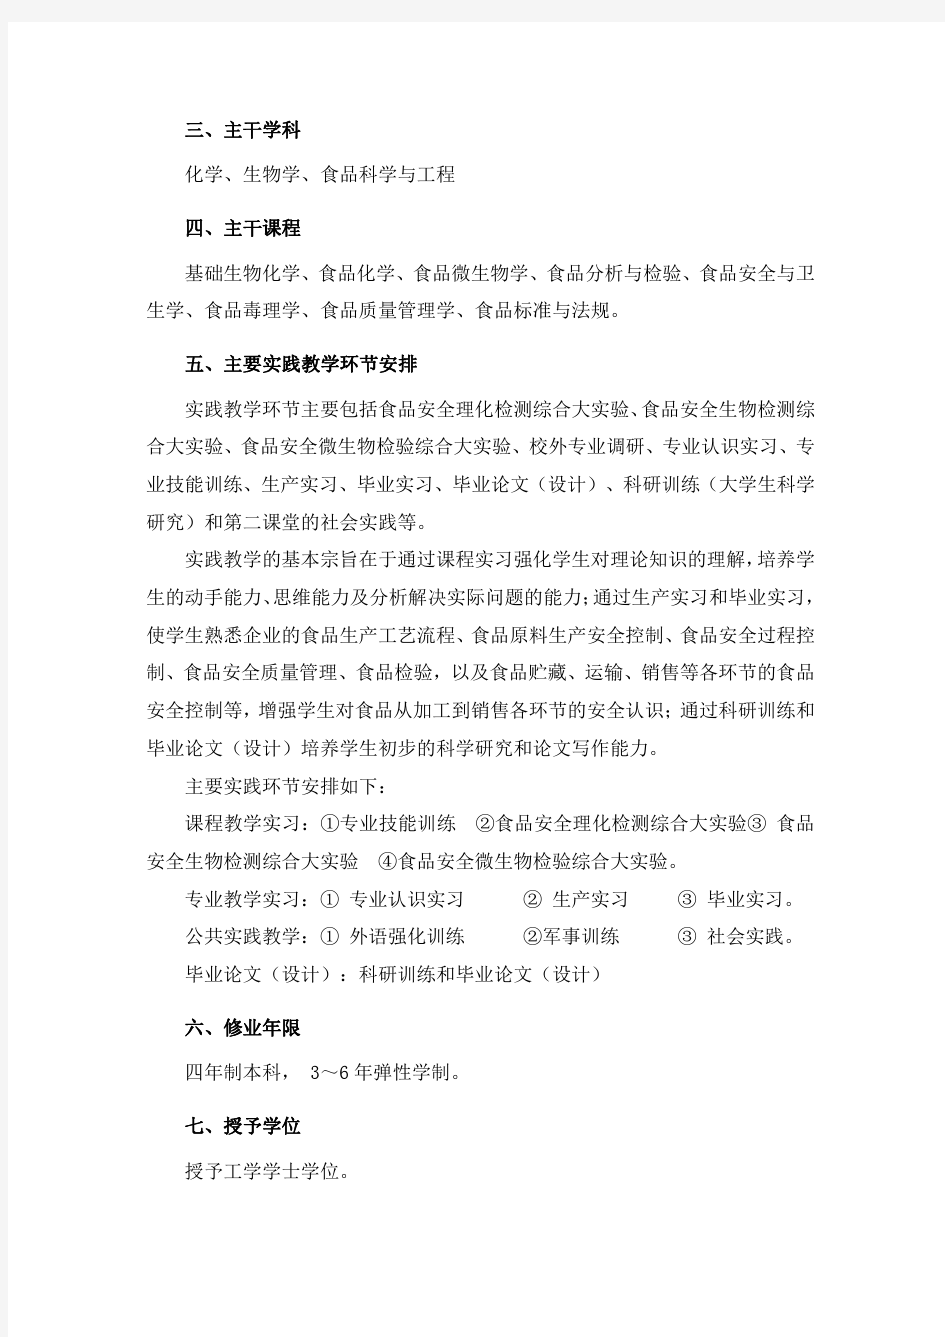 北京农学院 食品质量与安全培养方案-修改1.11.10-定稿